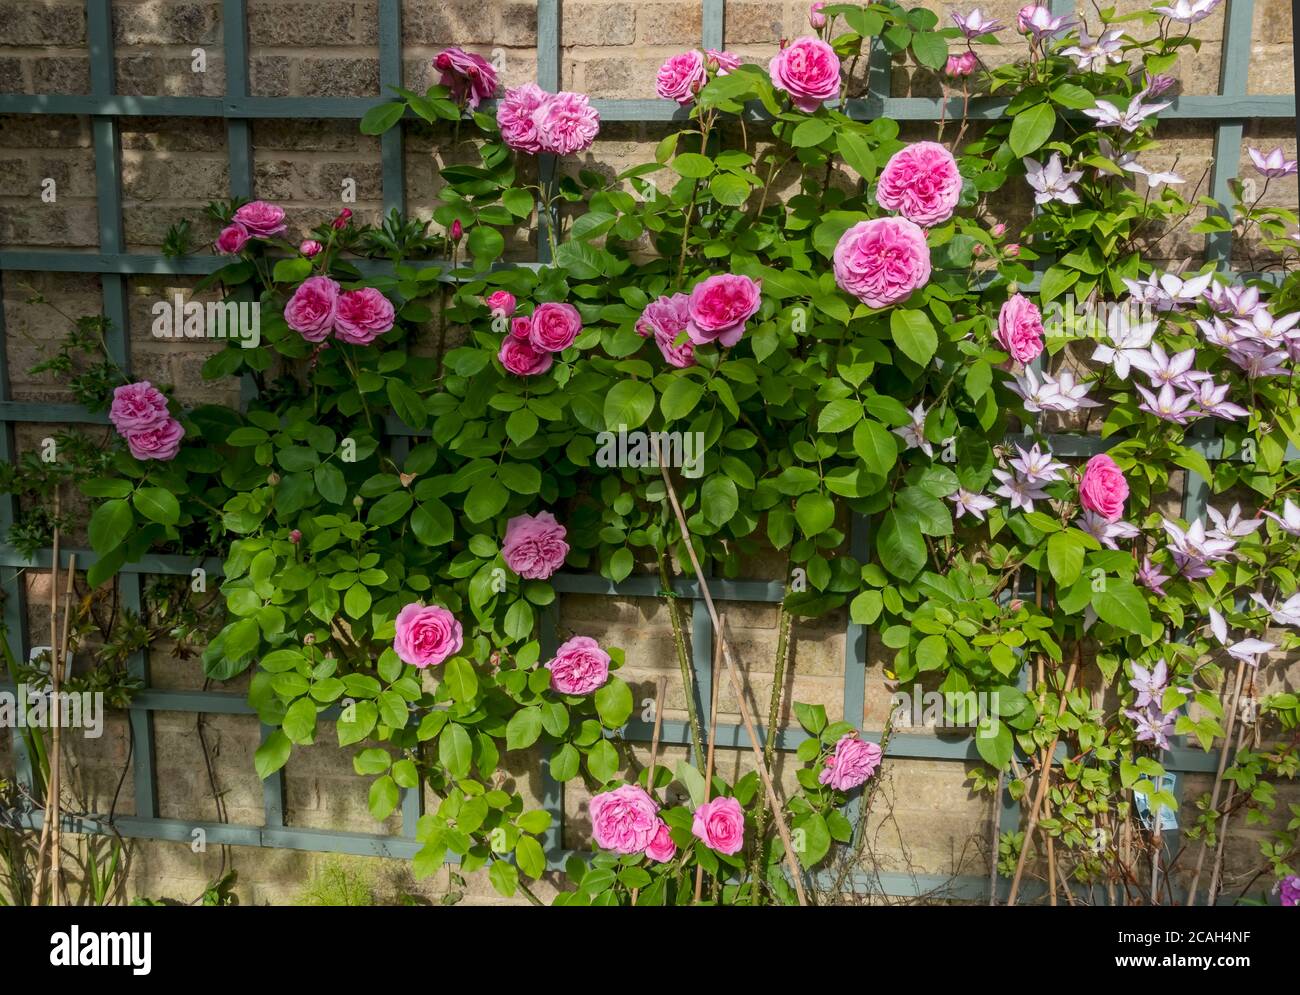 Roses grimpantes roses “Gertrude Jekyll” et clematis “Jamaritan JO” sur le trellis sur le mur fleurs fleurs fleurir dans le jardin en été Angleterre Royaume-Uni Banque D'Images